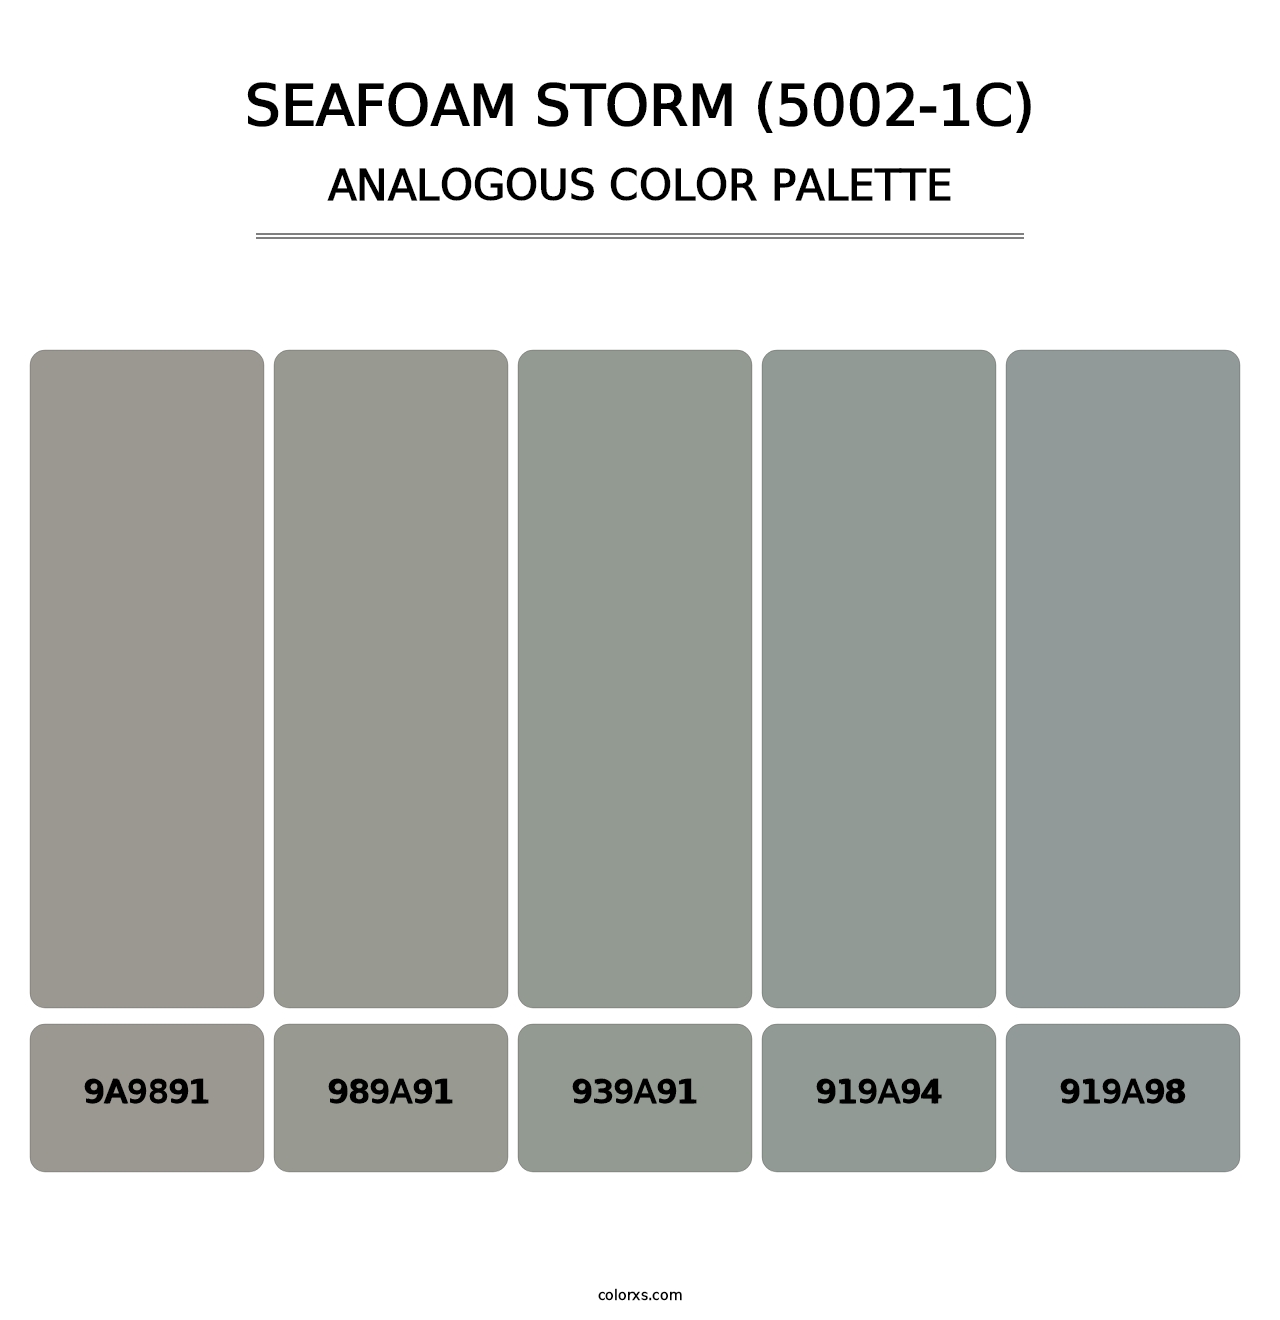 Seafoam Storm (5002-1C) - Analogous Color Palette